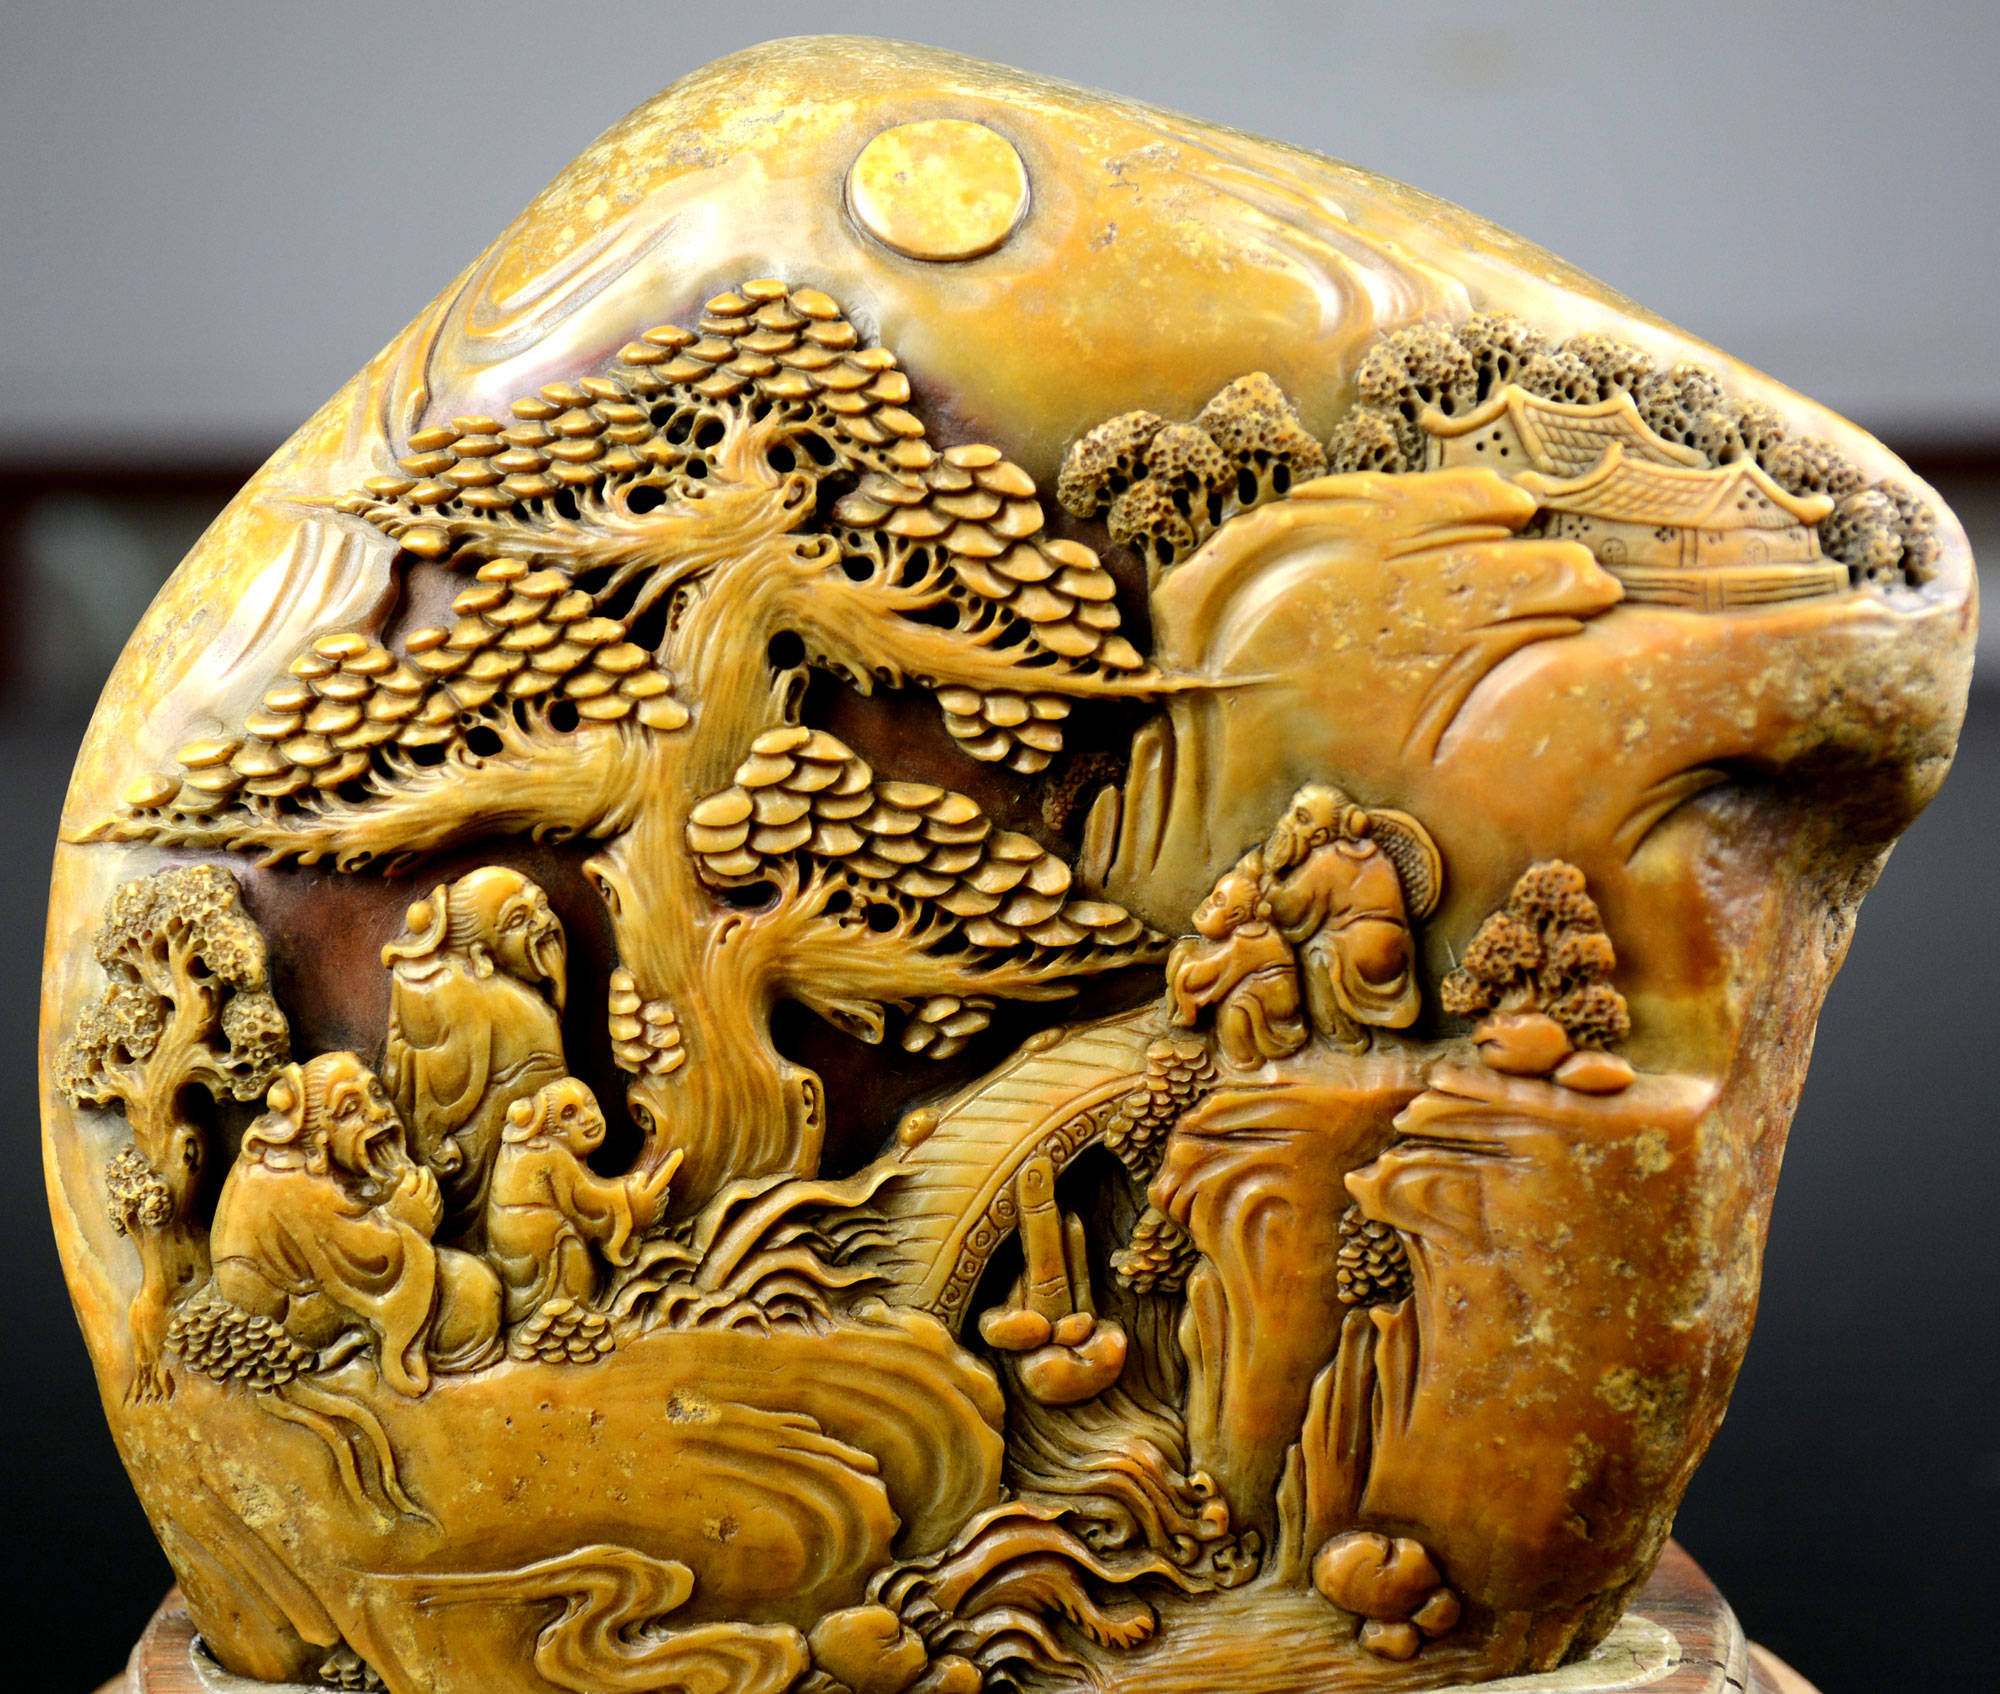 清末著名寿山石雕刻大师林元水作品《衣锦还乡》在福